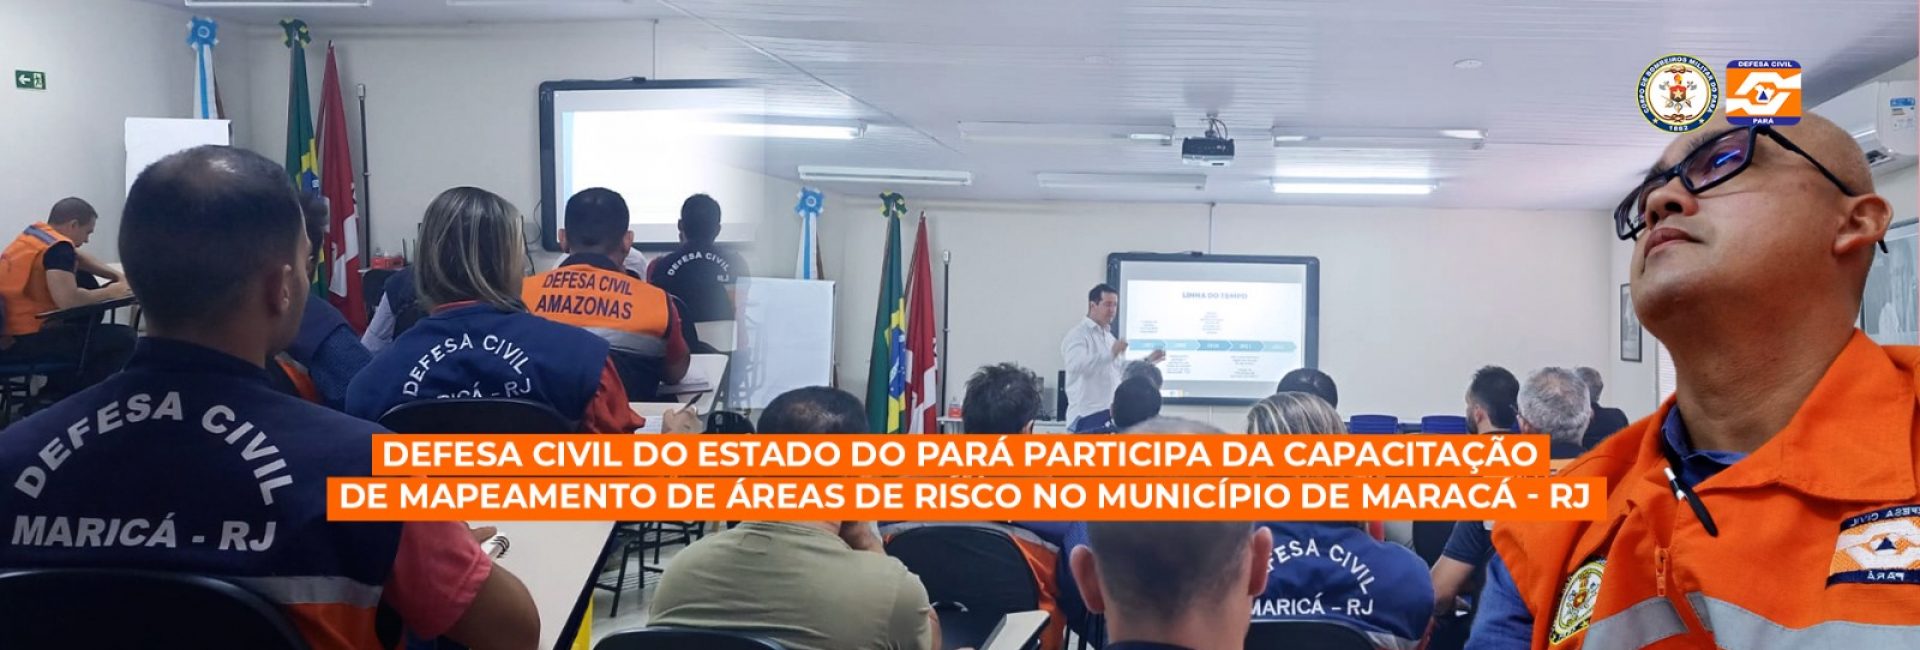 CBMPA E CEDEC PARTICIPAM DE CAPACITAÇÃO EM MAPEAMENTO DE ÁREAS DE RISCO NO RIO DE JANEIRO